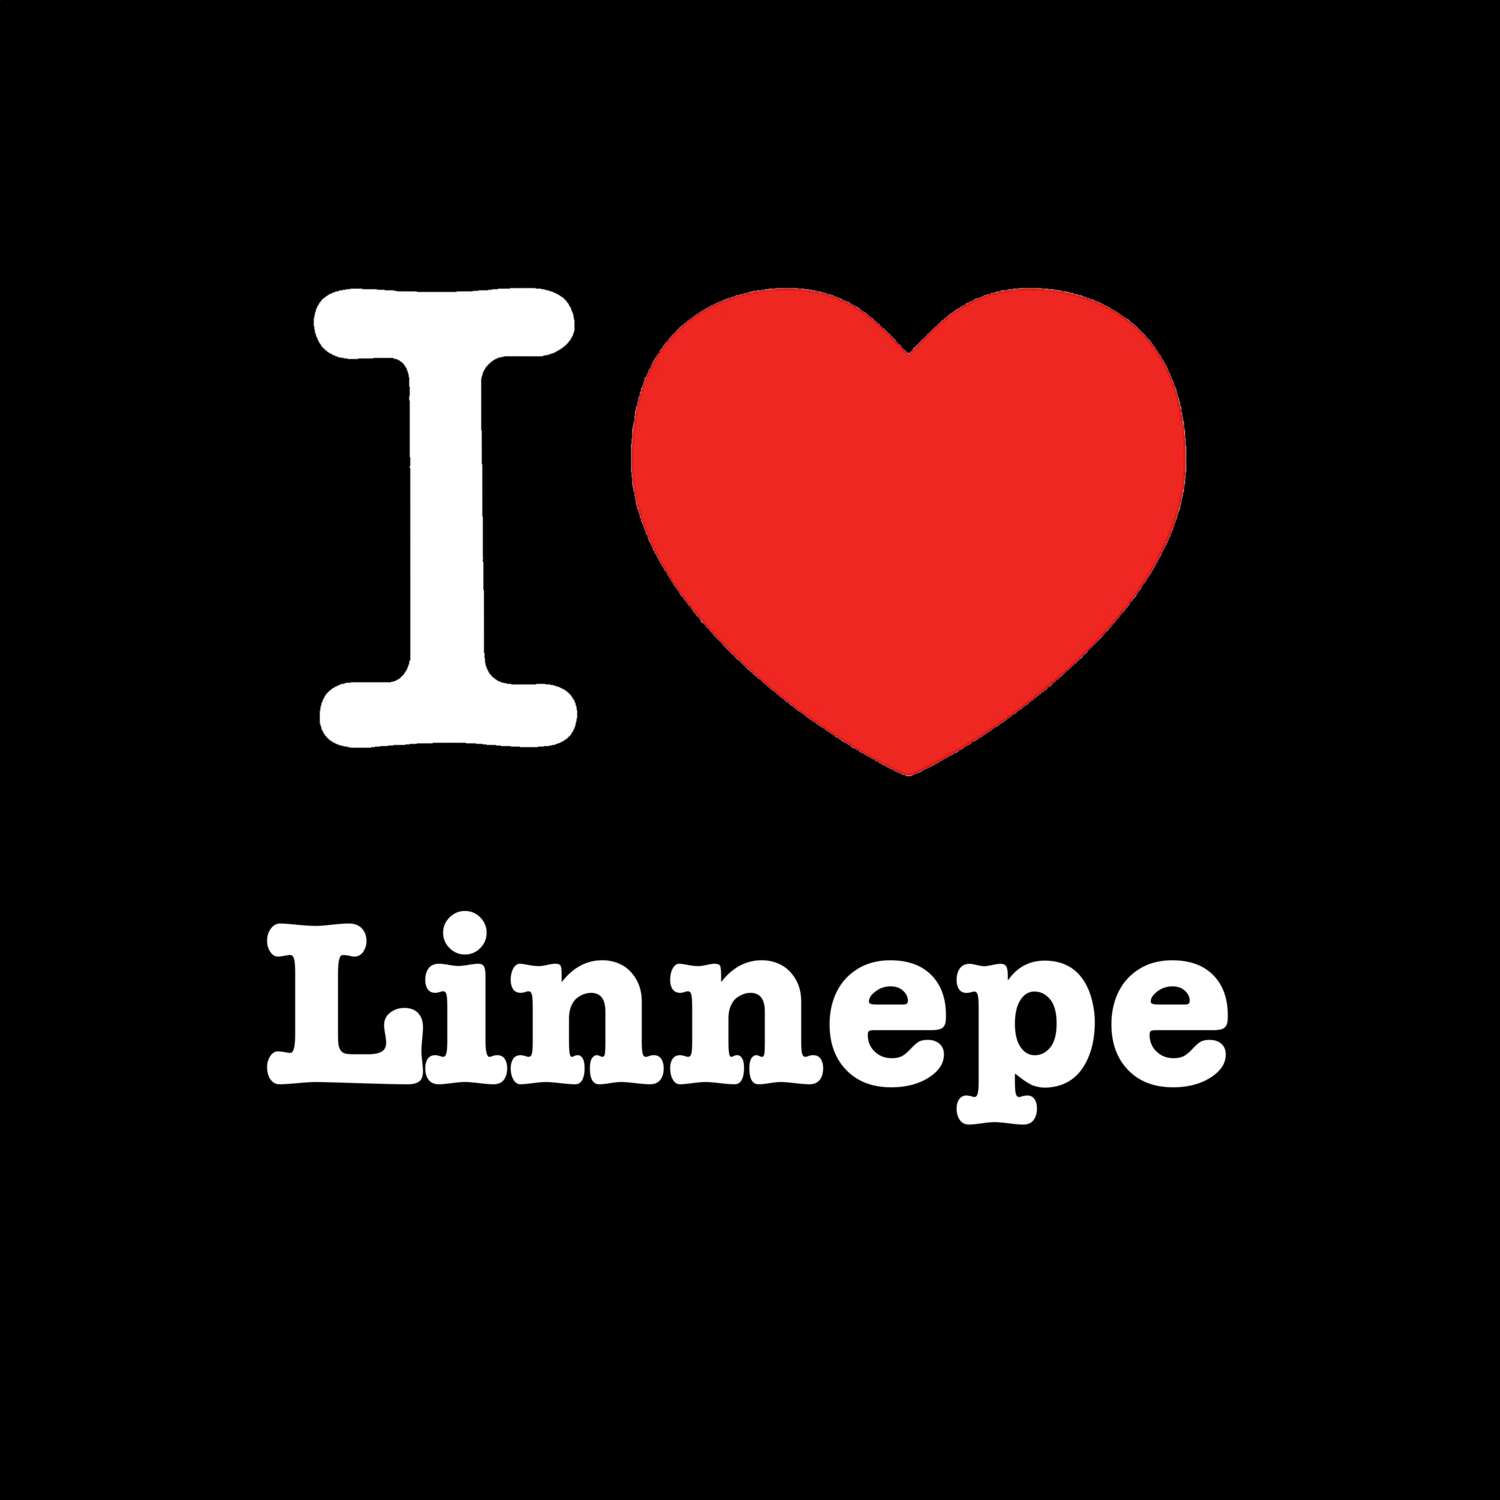 Linnepe T-Shirt »I love«